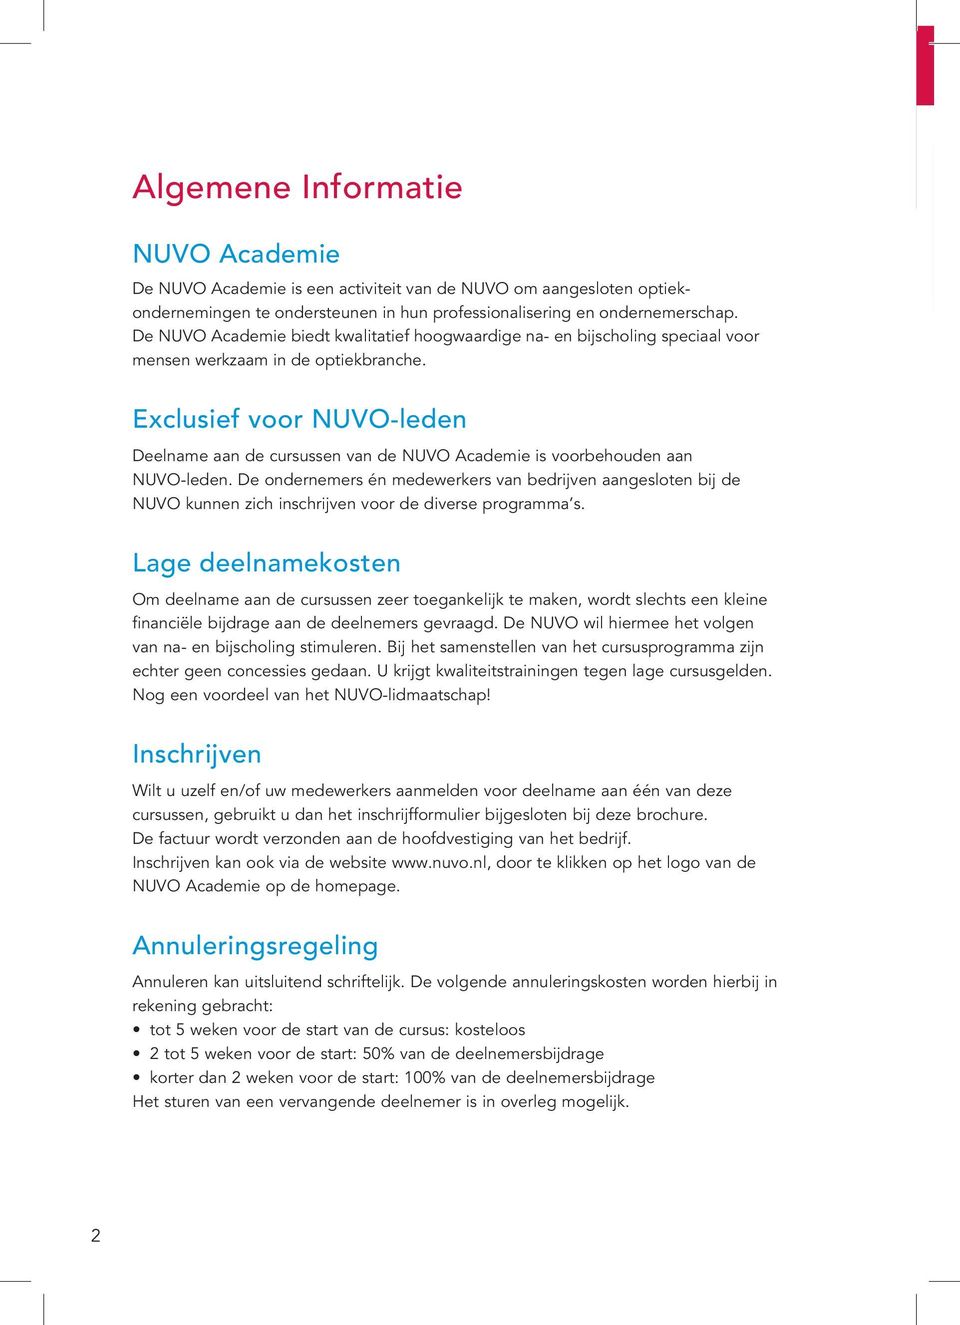 Exclusief voor NUVO-leden Deelname aan de cursussen van de NUVO Academie is voorbehouden aan NUVO-leden.